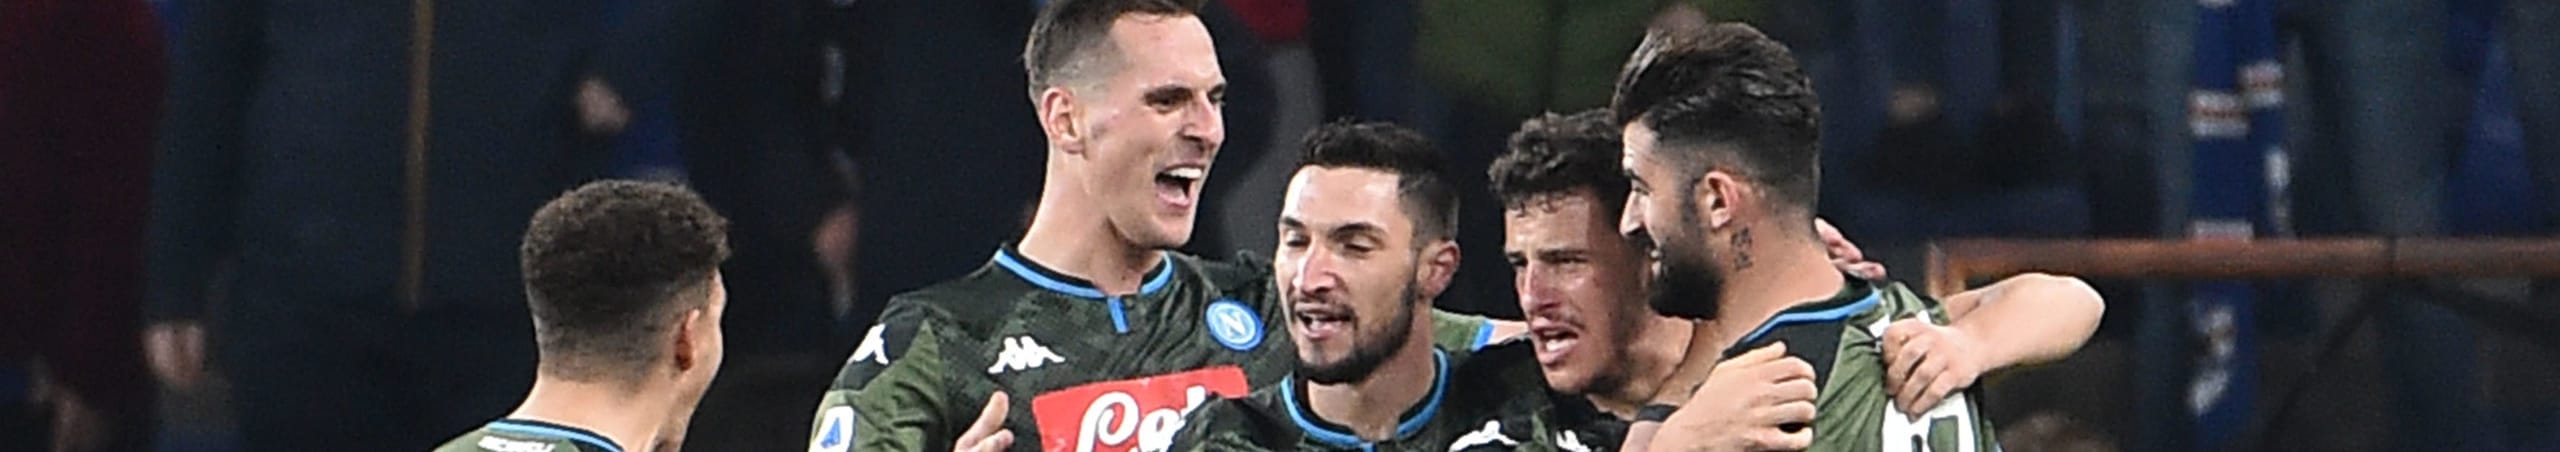 Napoli-Lecce: Gattuso ha ritrovato gli azzurri, ma per la rincorsa attenzione ai blackout